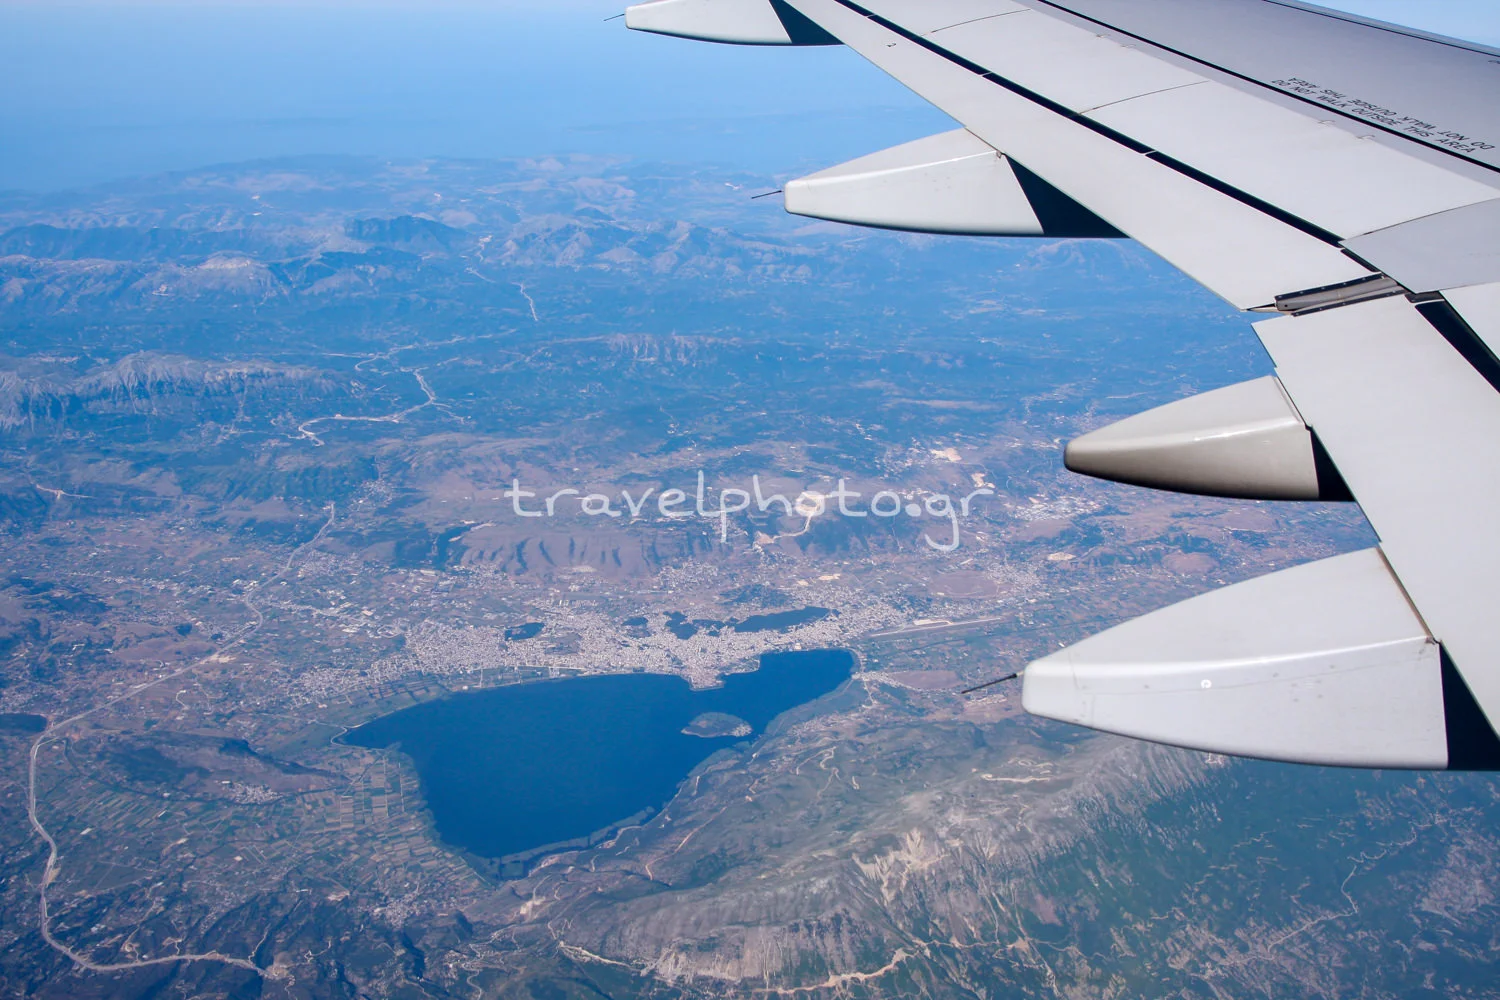 Η λίμνη των Ιωαννίνων όπως φαίνεται από το αεροπλάνο.